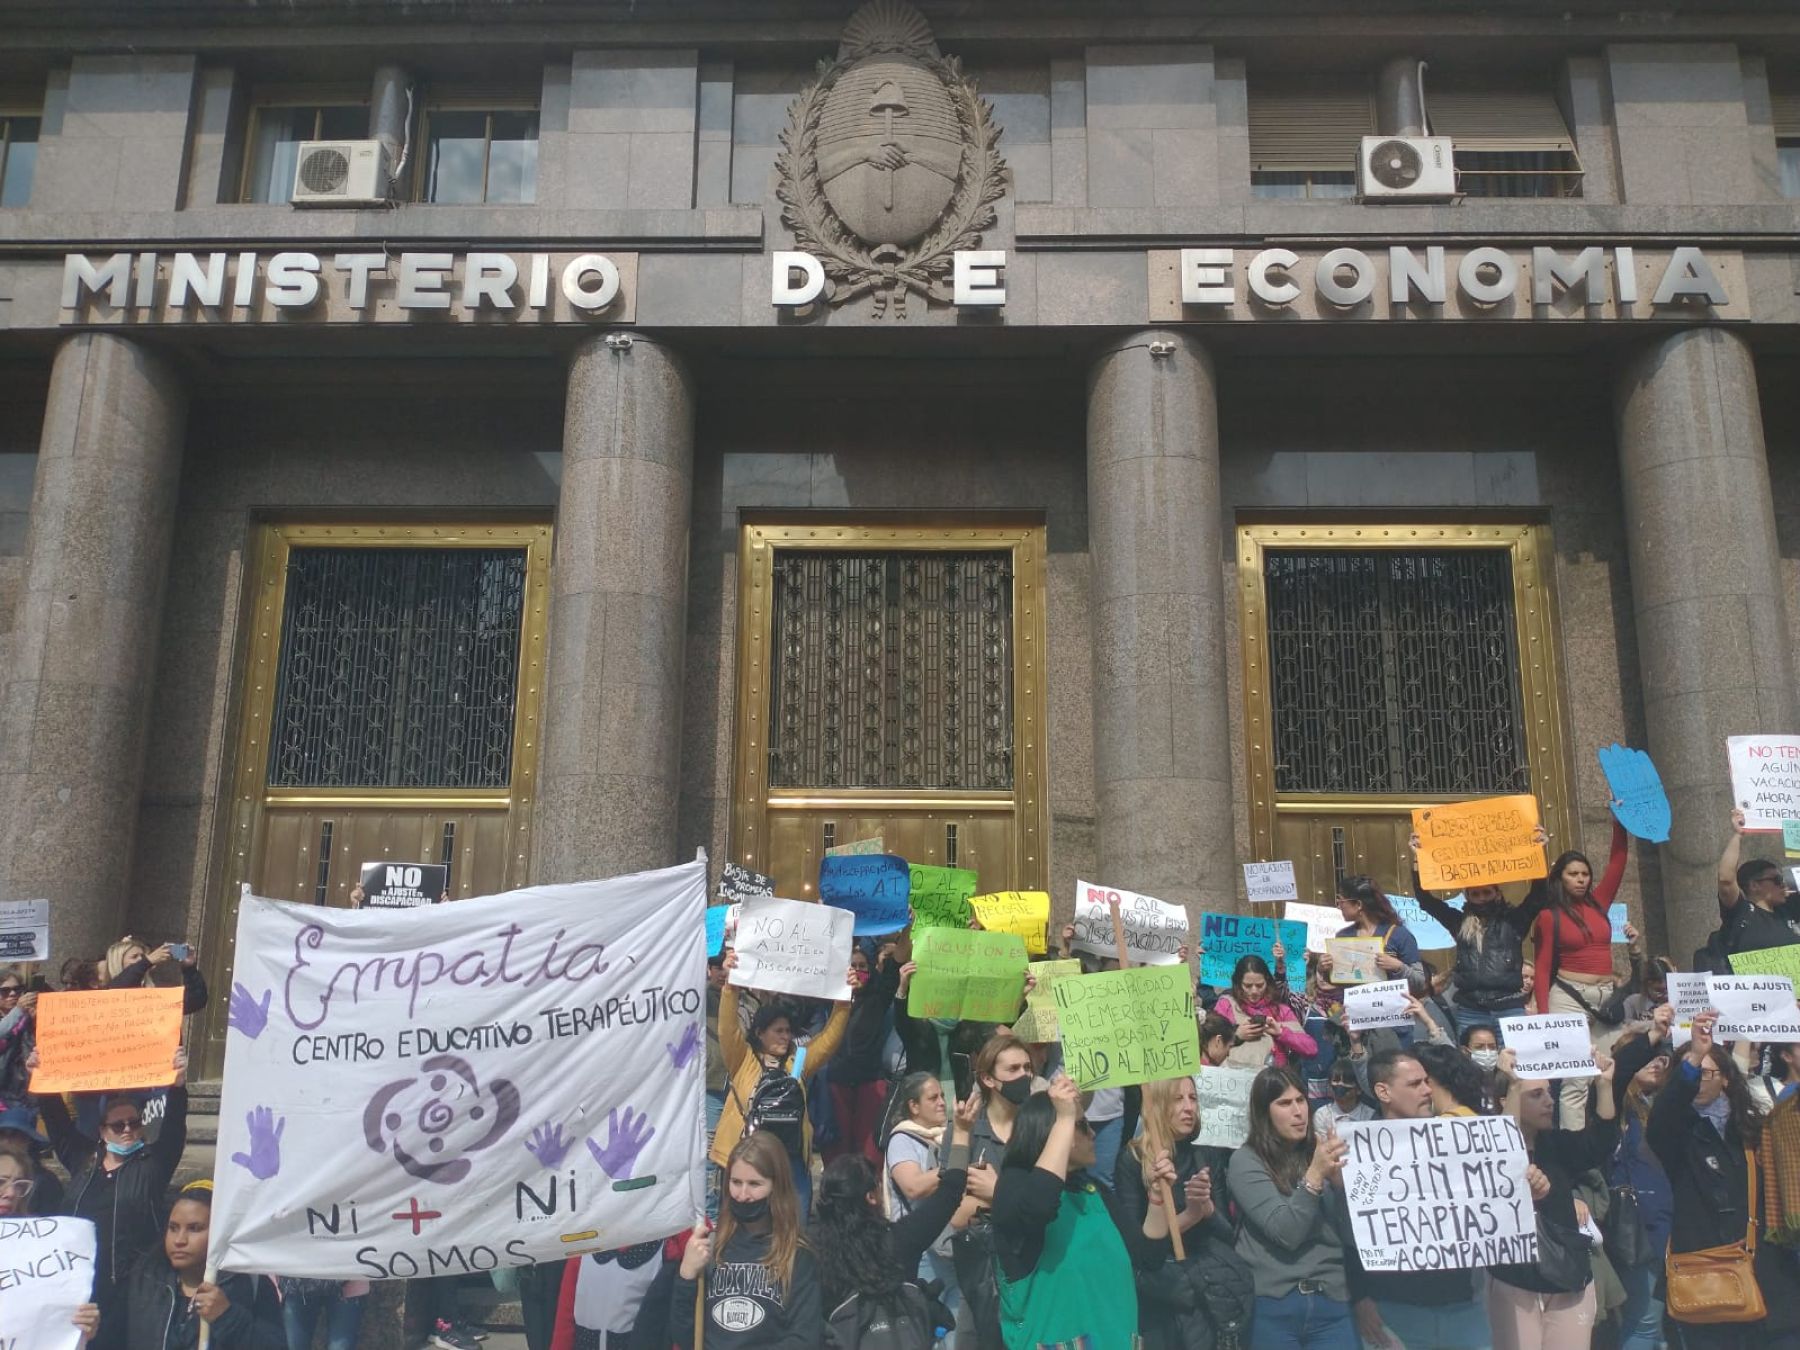 Prestadores e integrantes del Colectivo de Discapacidad marcharon a la SSS, al Minsterio de Economía y a la AFIP.
Foto: Mariana Rolleri